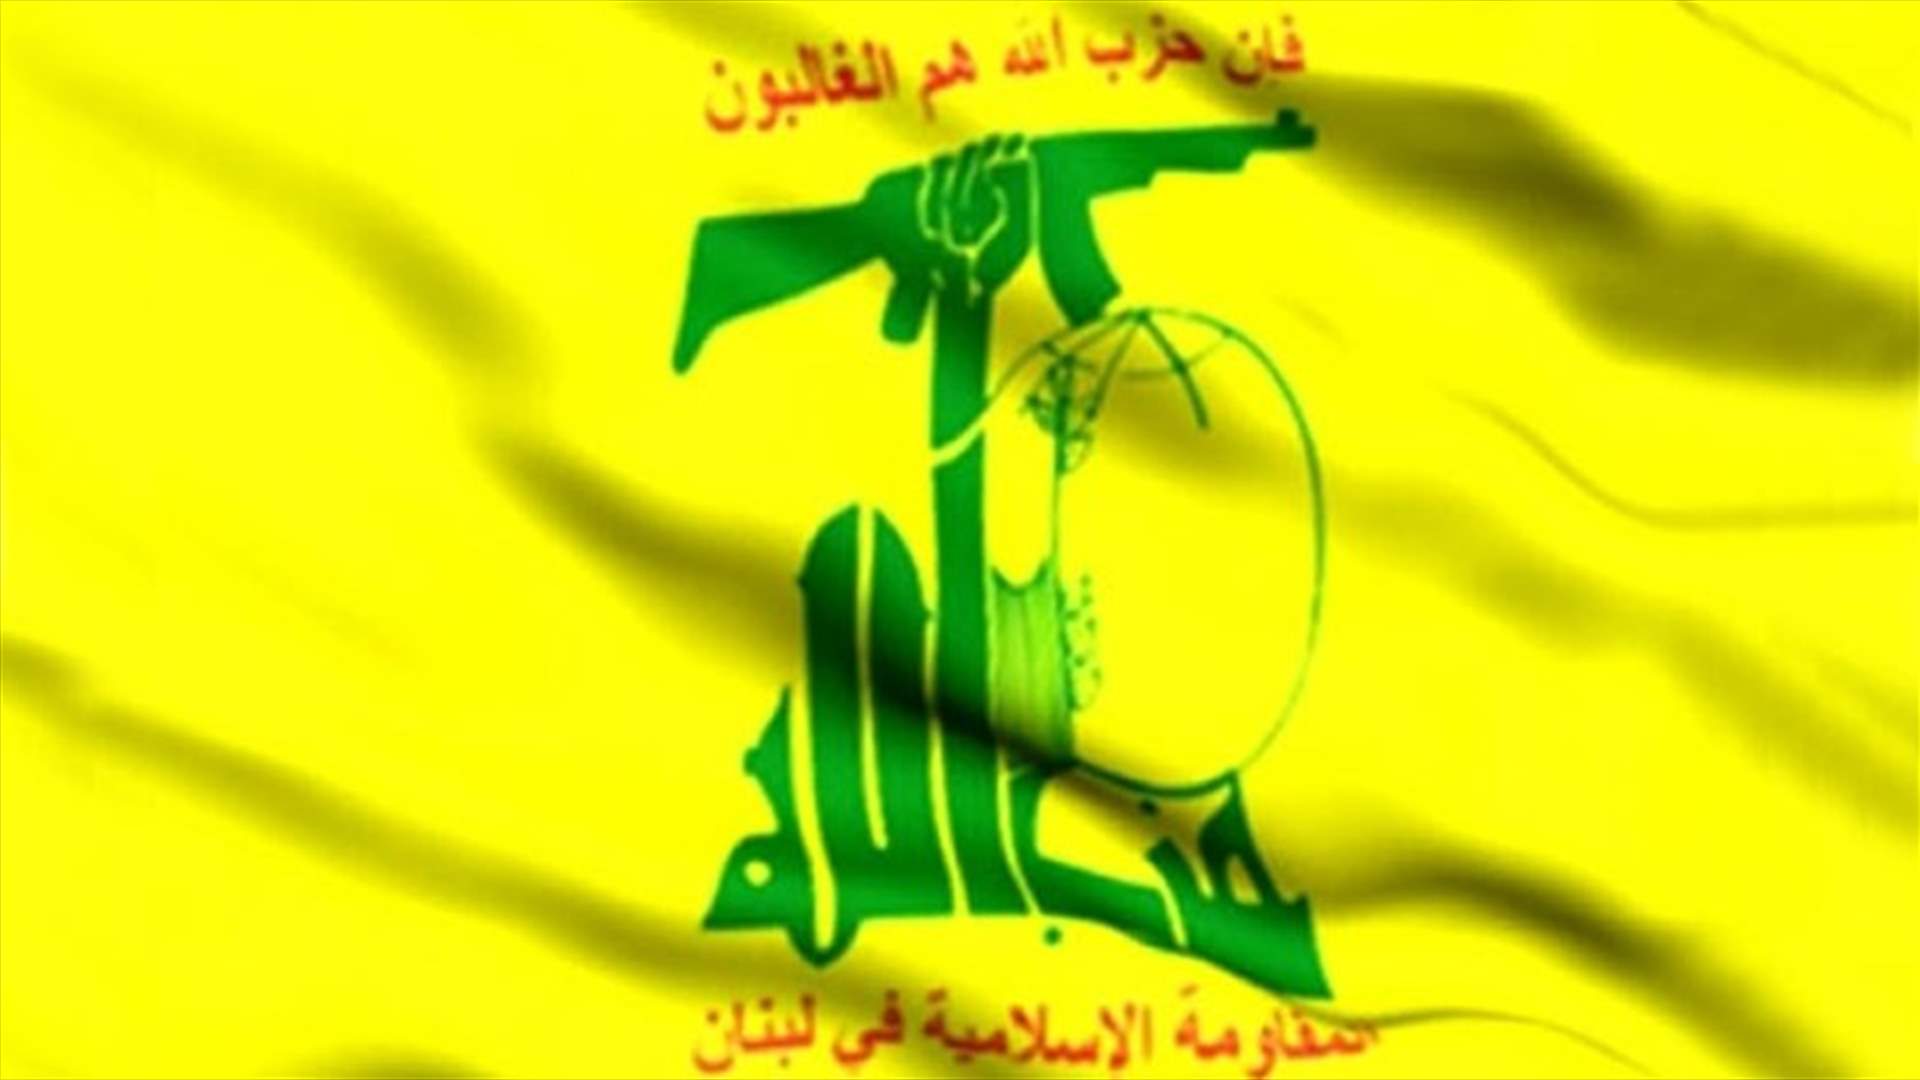 حزب الله دان اغتيال فقهاء: لمعاقبة المنفذين والمخططين